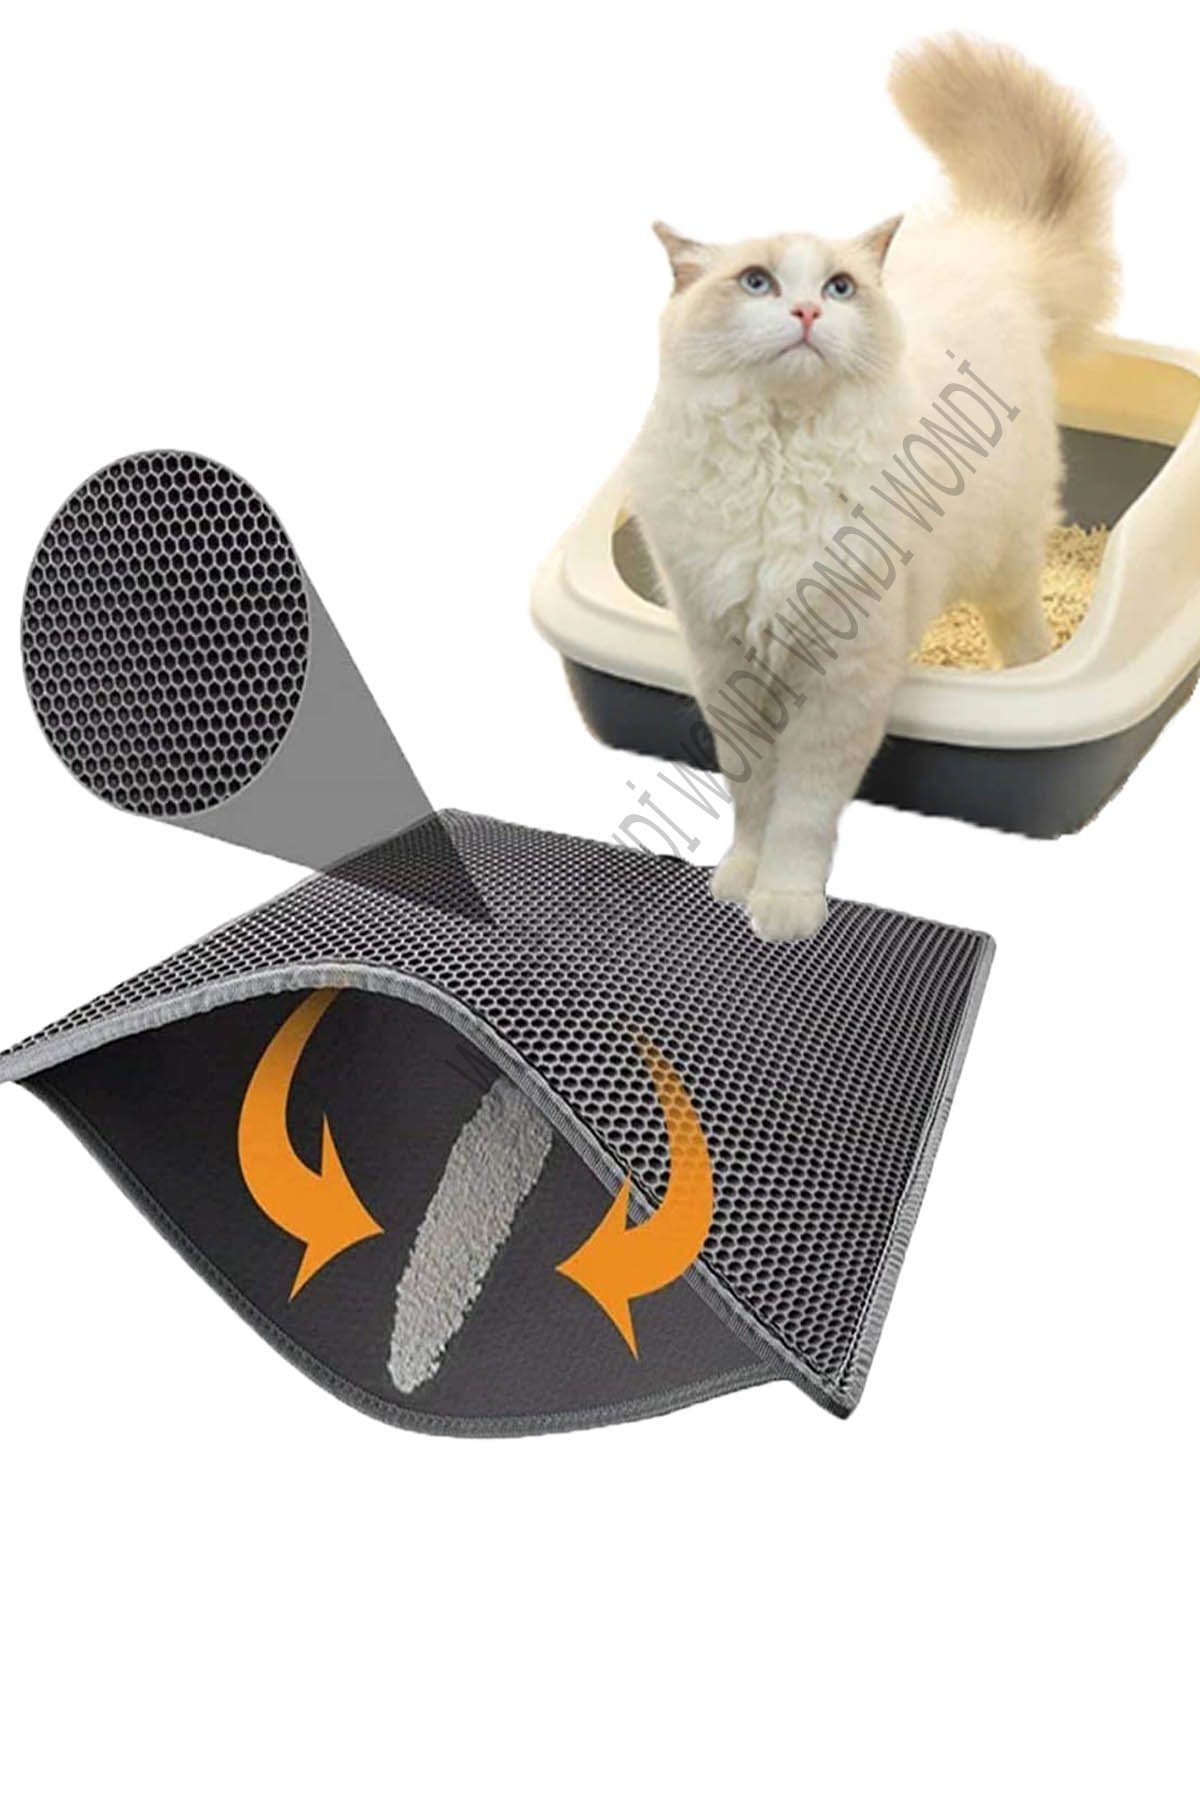 Elekli Kedi Tuvalet Önü Paspası 60x42,5 Cm Kedi Paspası Gri